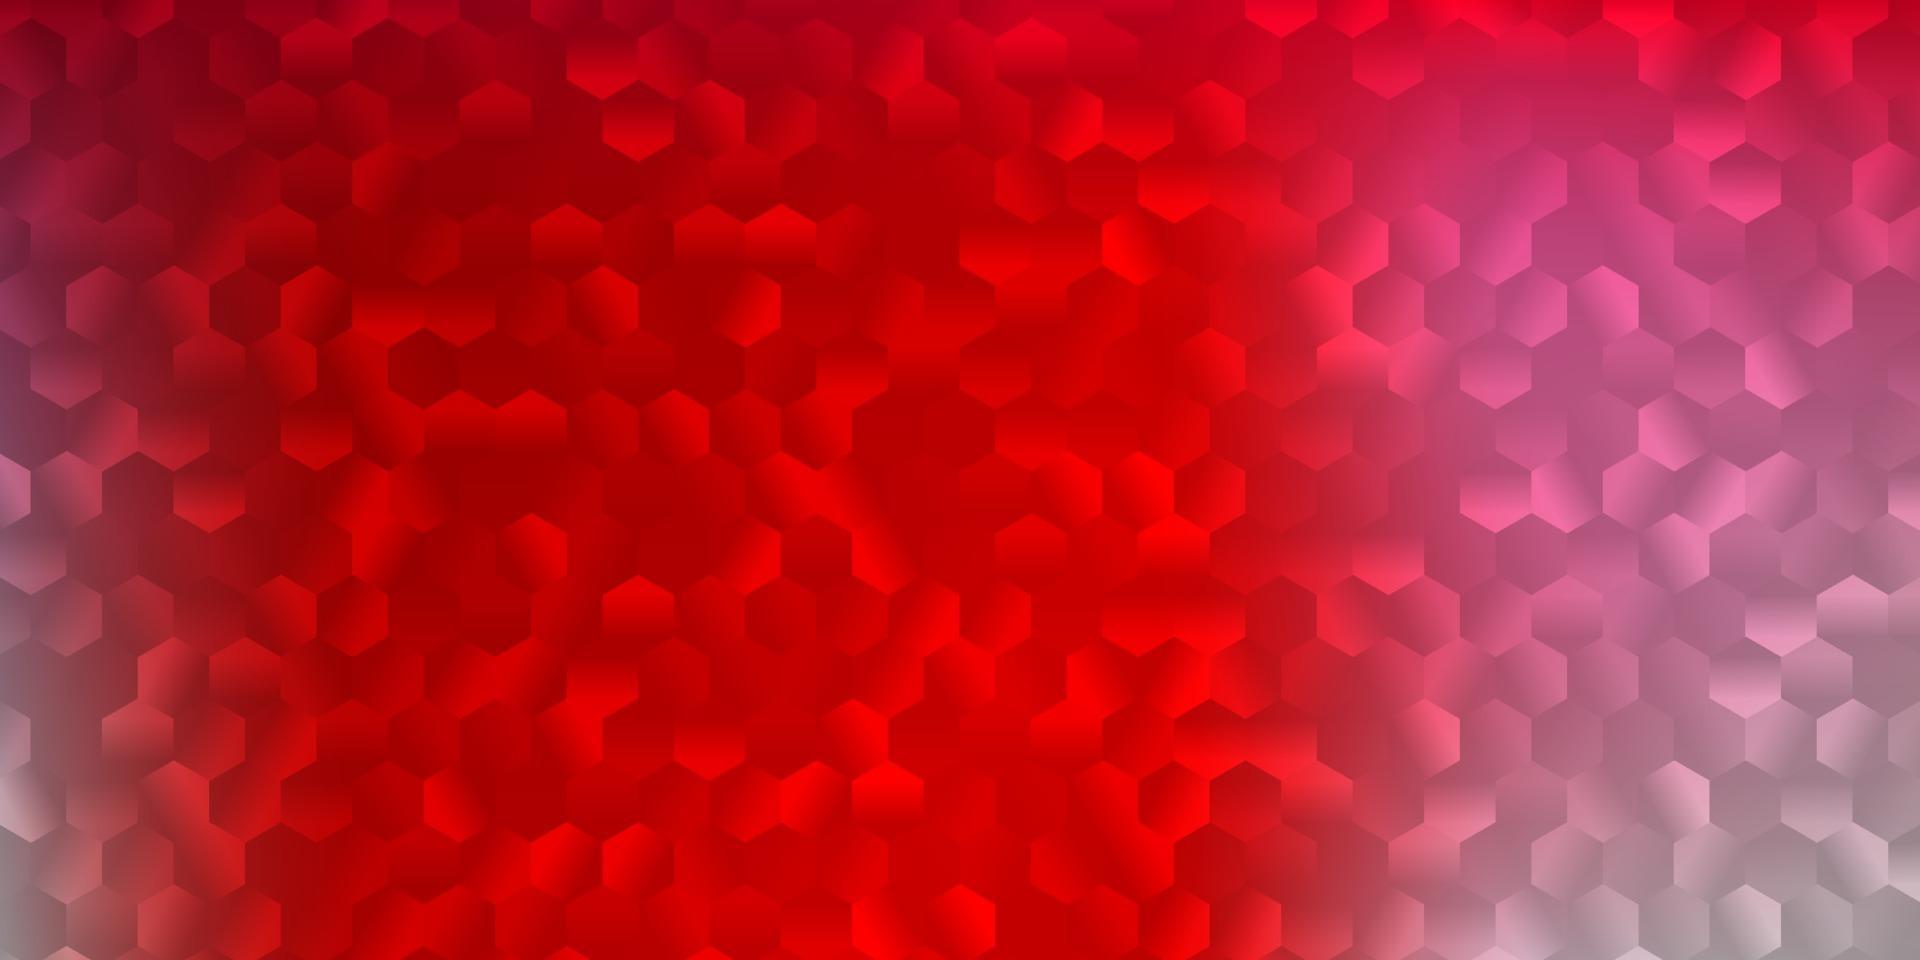 cubierta de vector rojo claro con hexágonos simples.